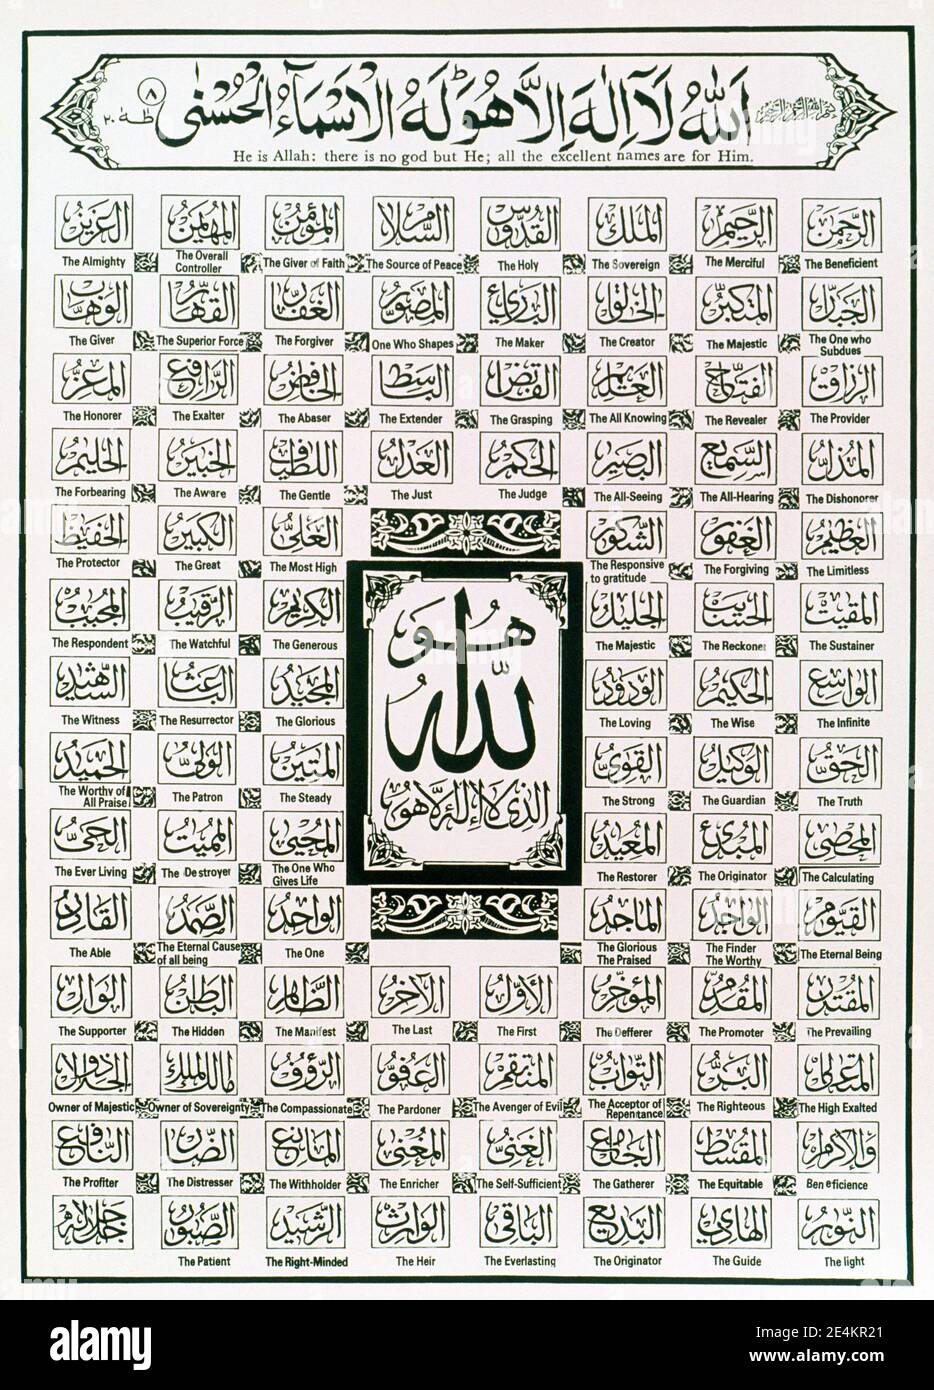 Taglie laminatostampa HD Islam Musulmani 99 NOMI DI ALLAH POSTERA4 A3 & A3  Articoli da collezione MK5768263